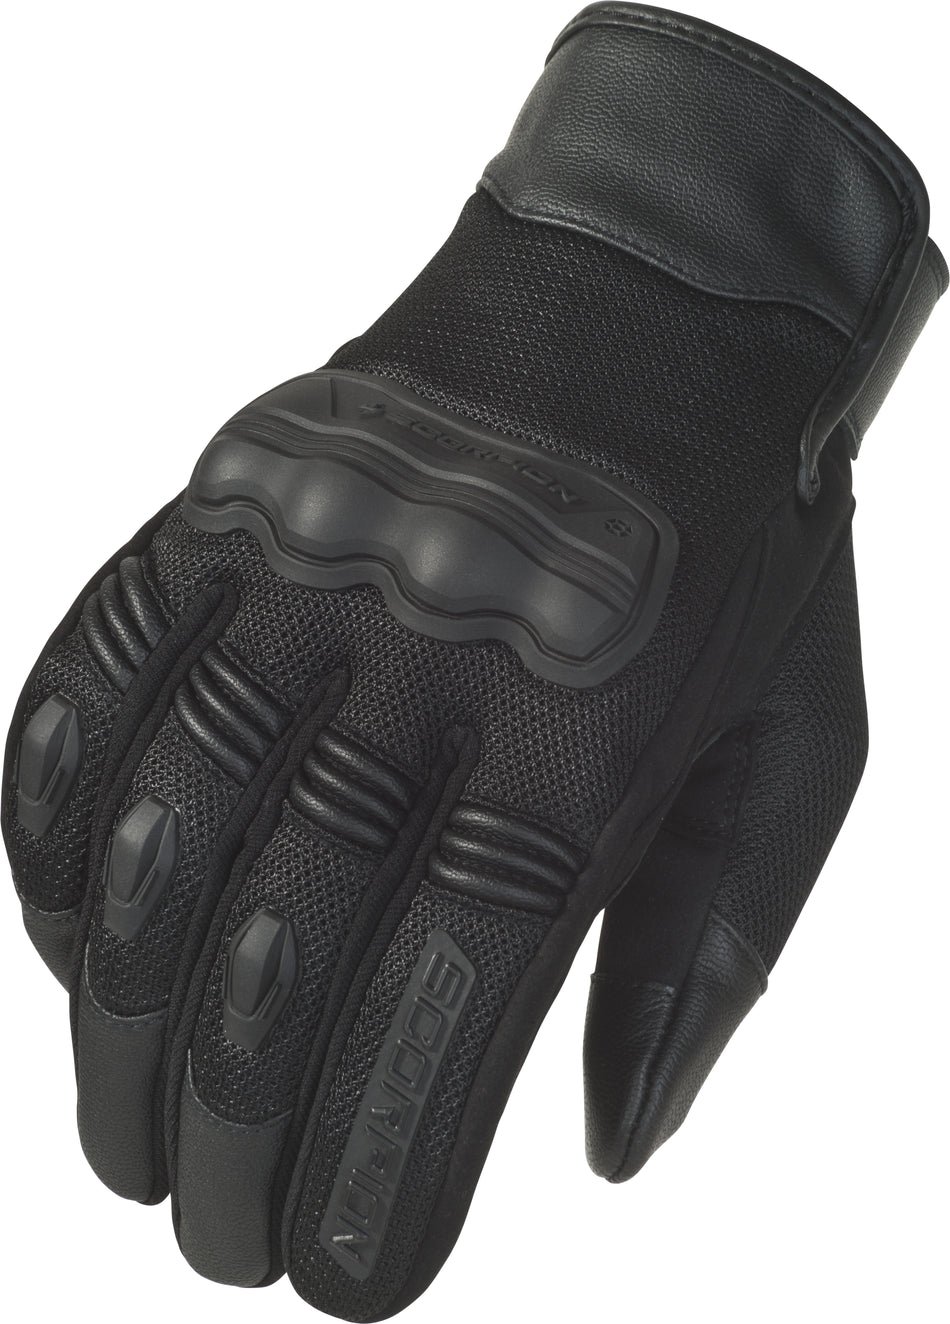 SCORPION EXO Divergent Gloves Black 3x G33-038